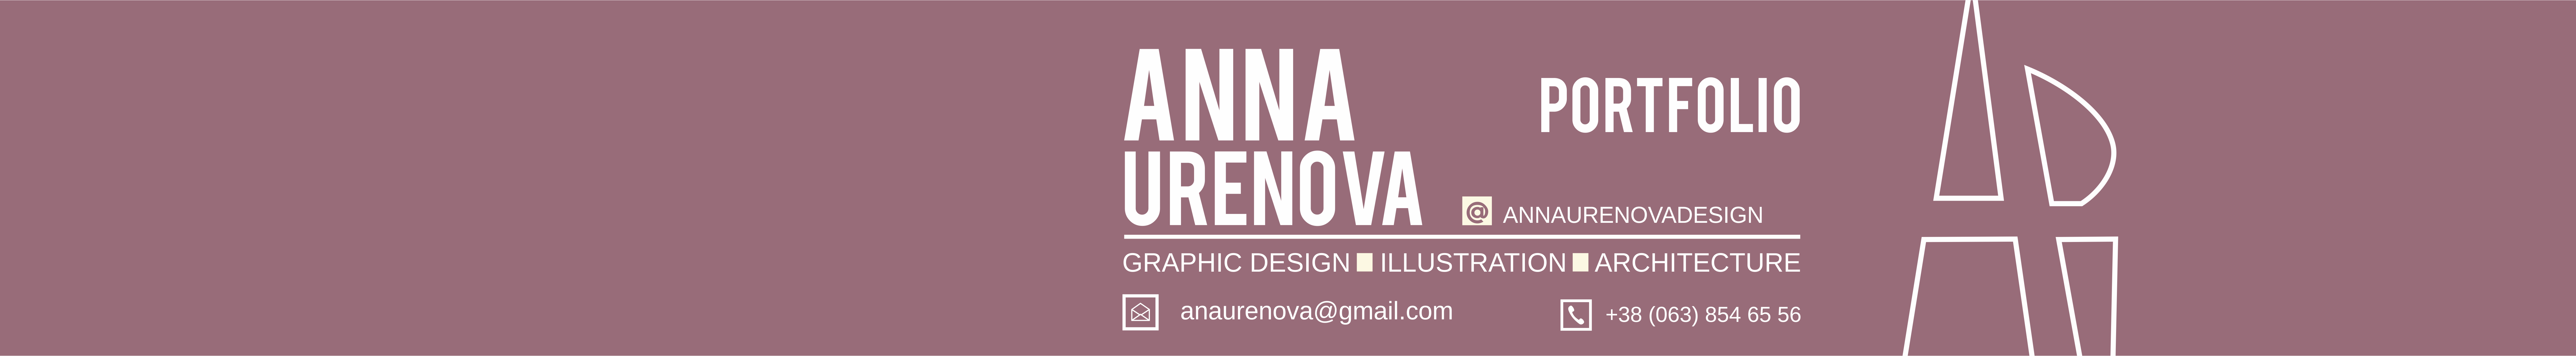 Баннер профиля Anna Ureñova